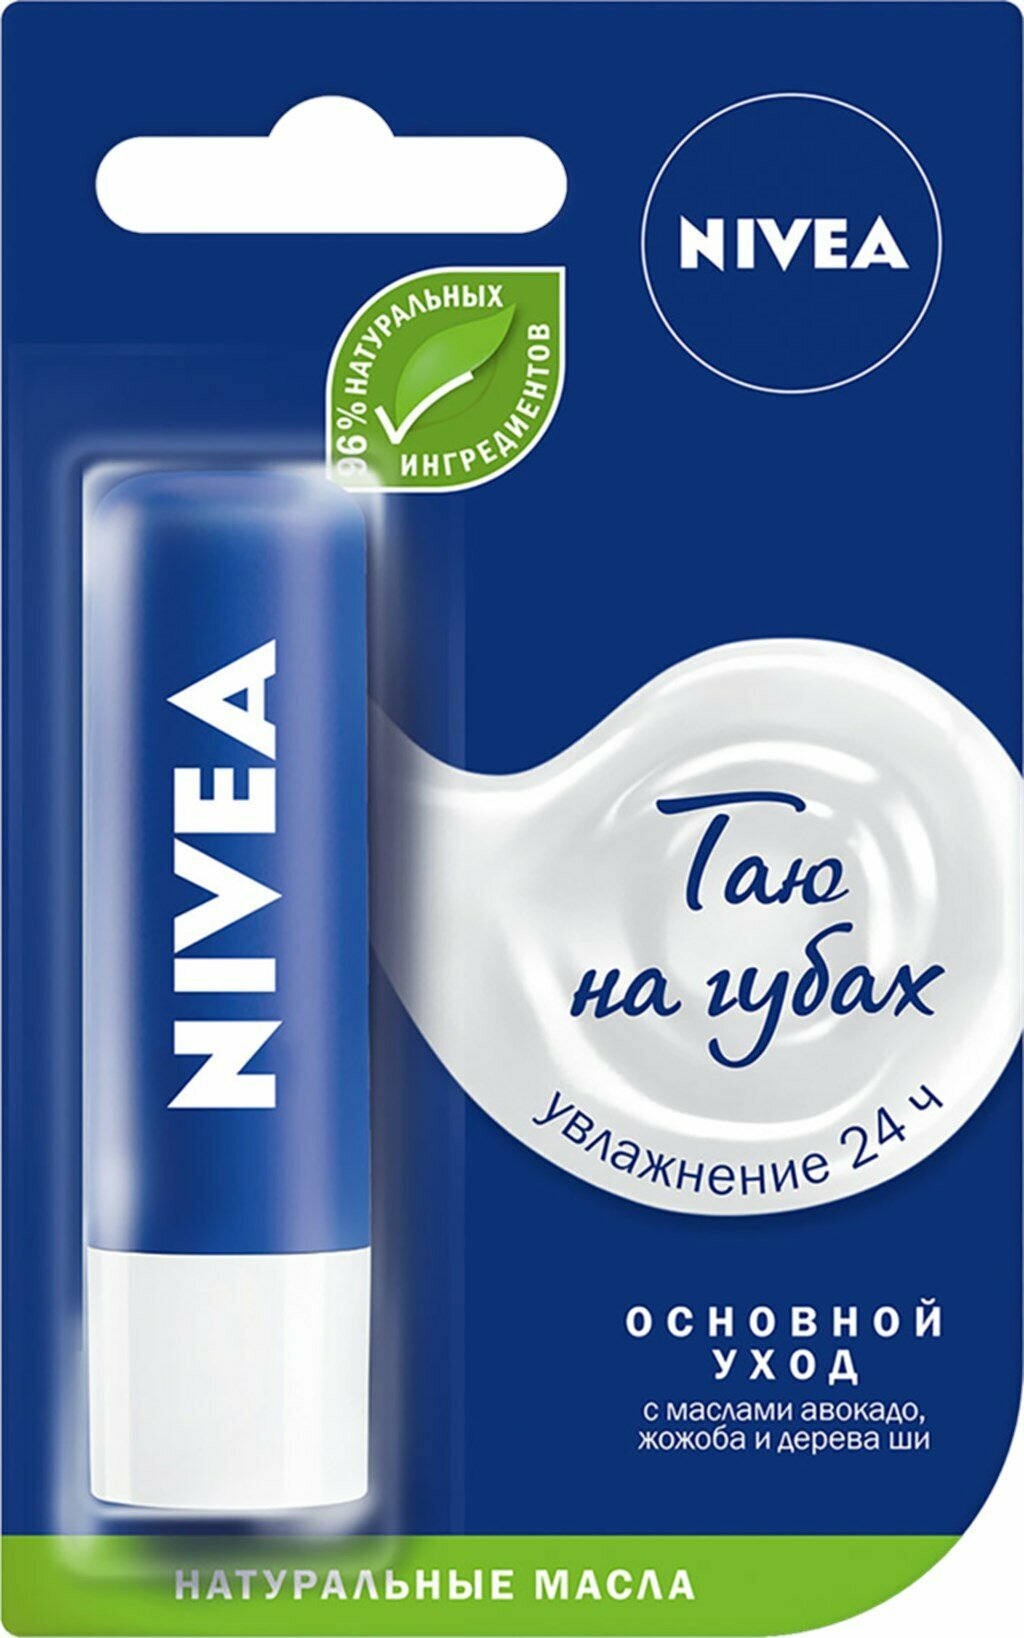 Бальзам для губ NIVEA Основной уход с маслом а дерева ши и витаминами С и Е, 4,8г, Германия, 4,8 г